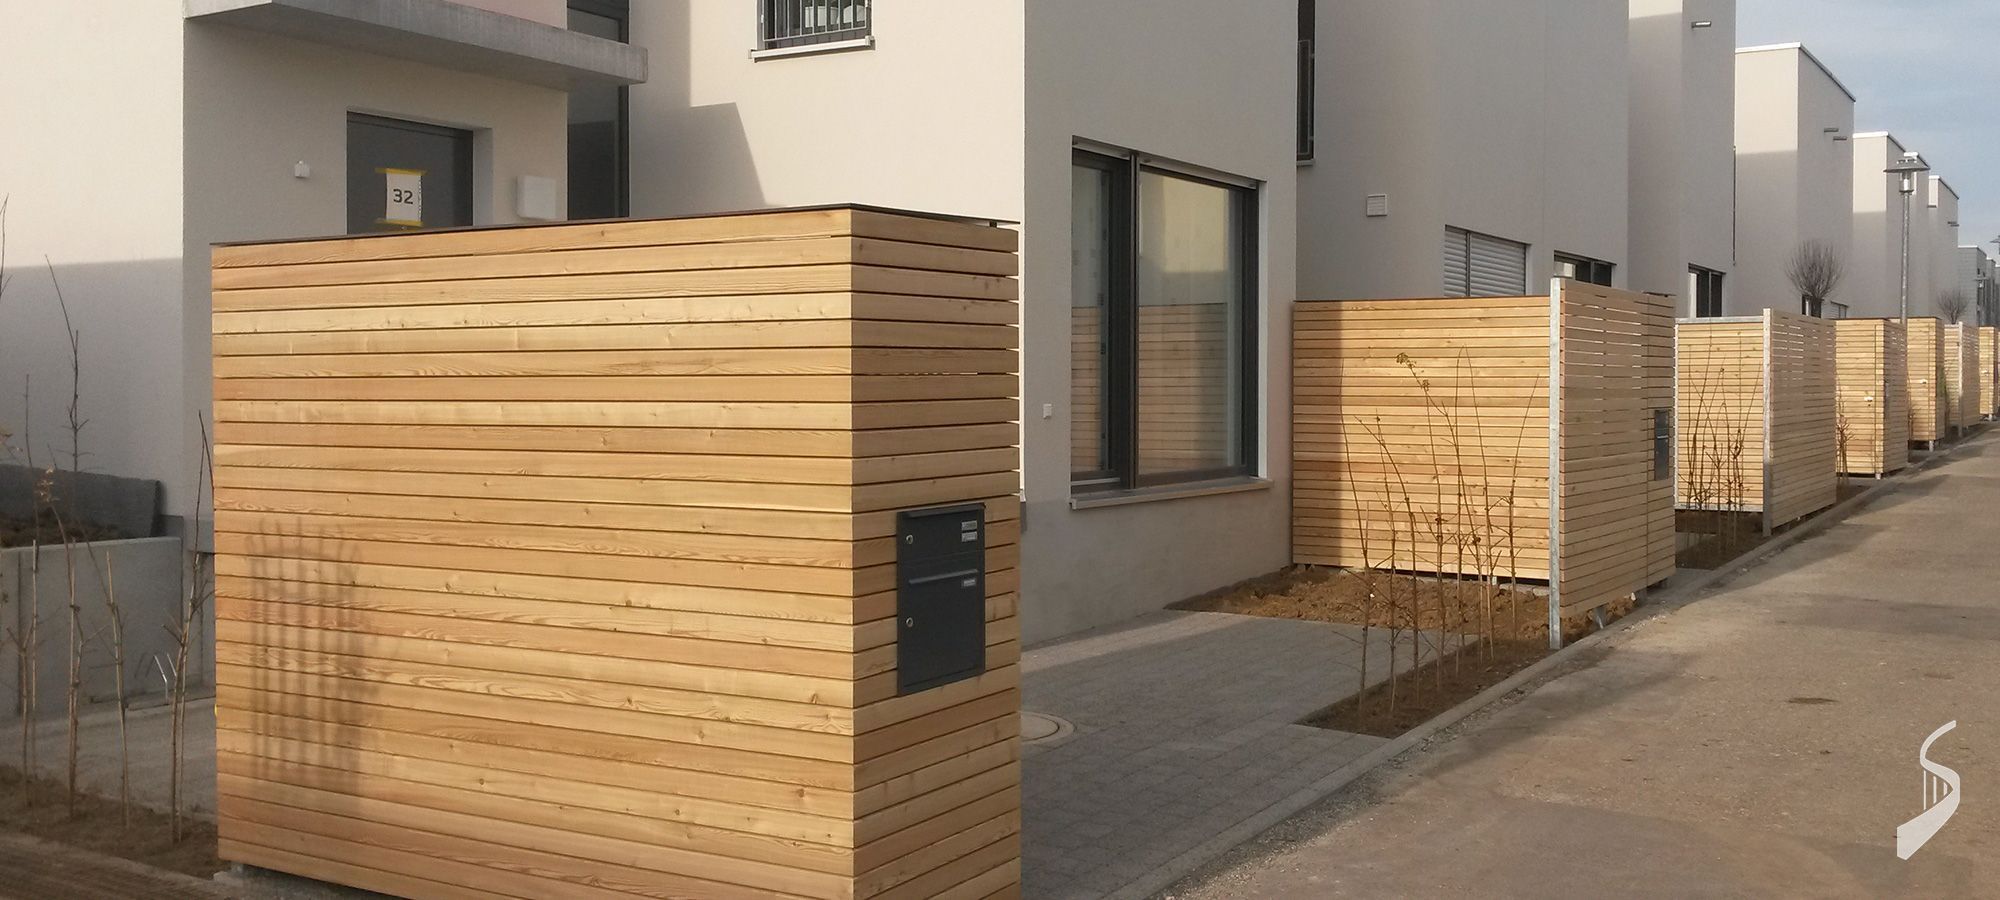 Carport Bauen Lassen In Denkendorf Holz Im Aussenbereich